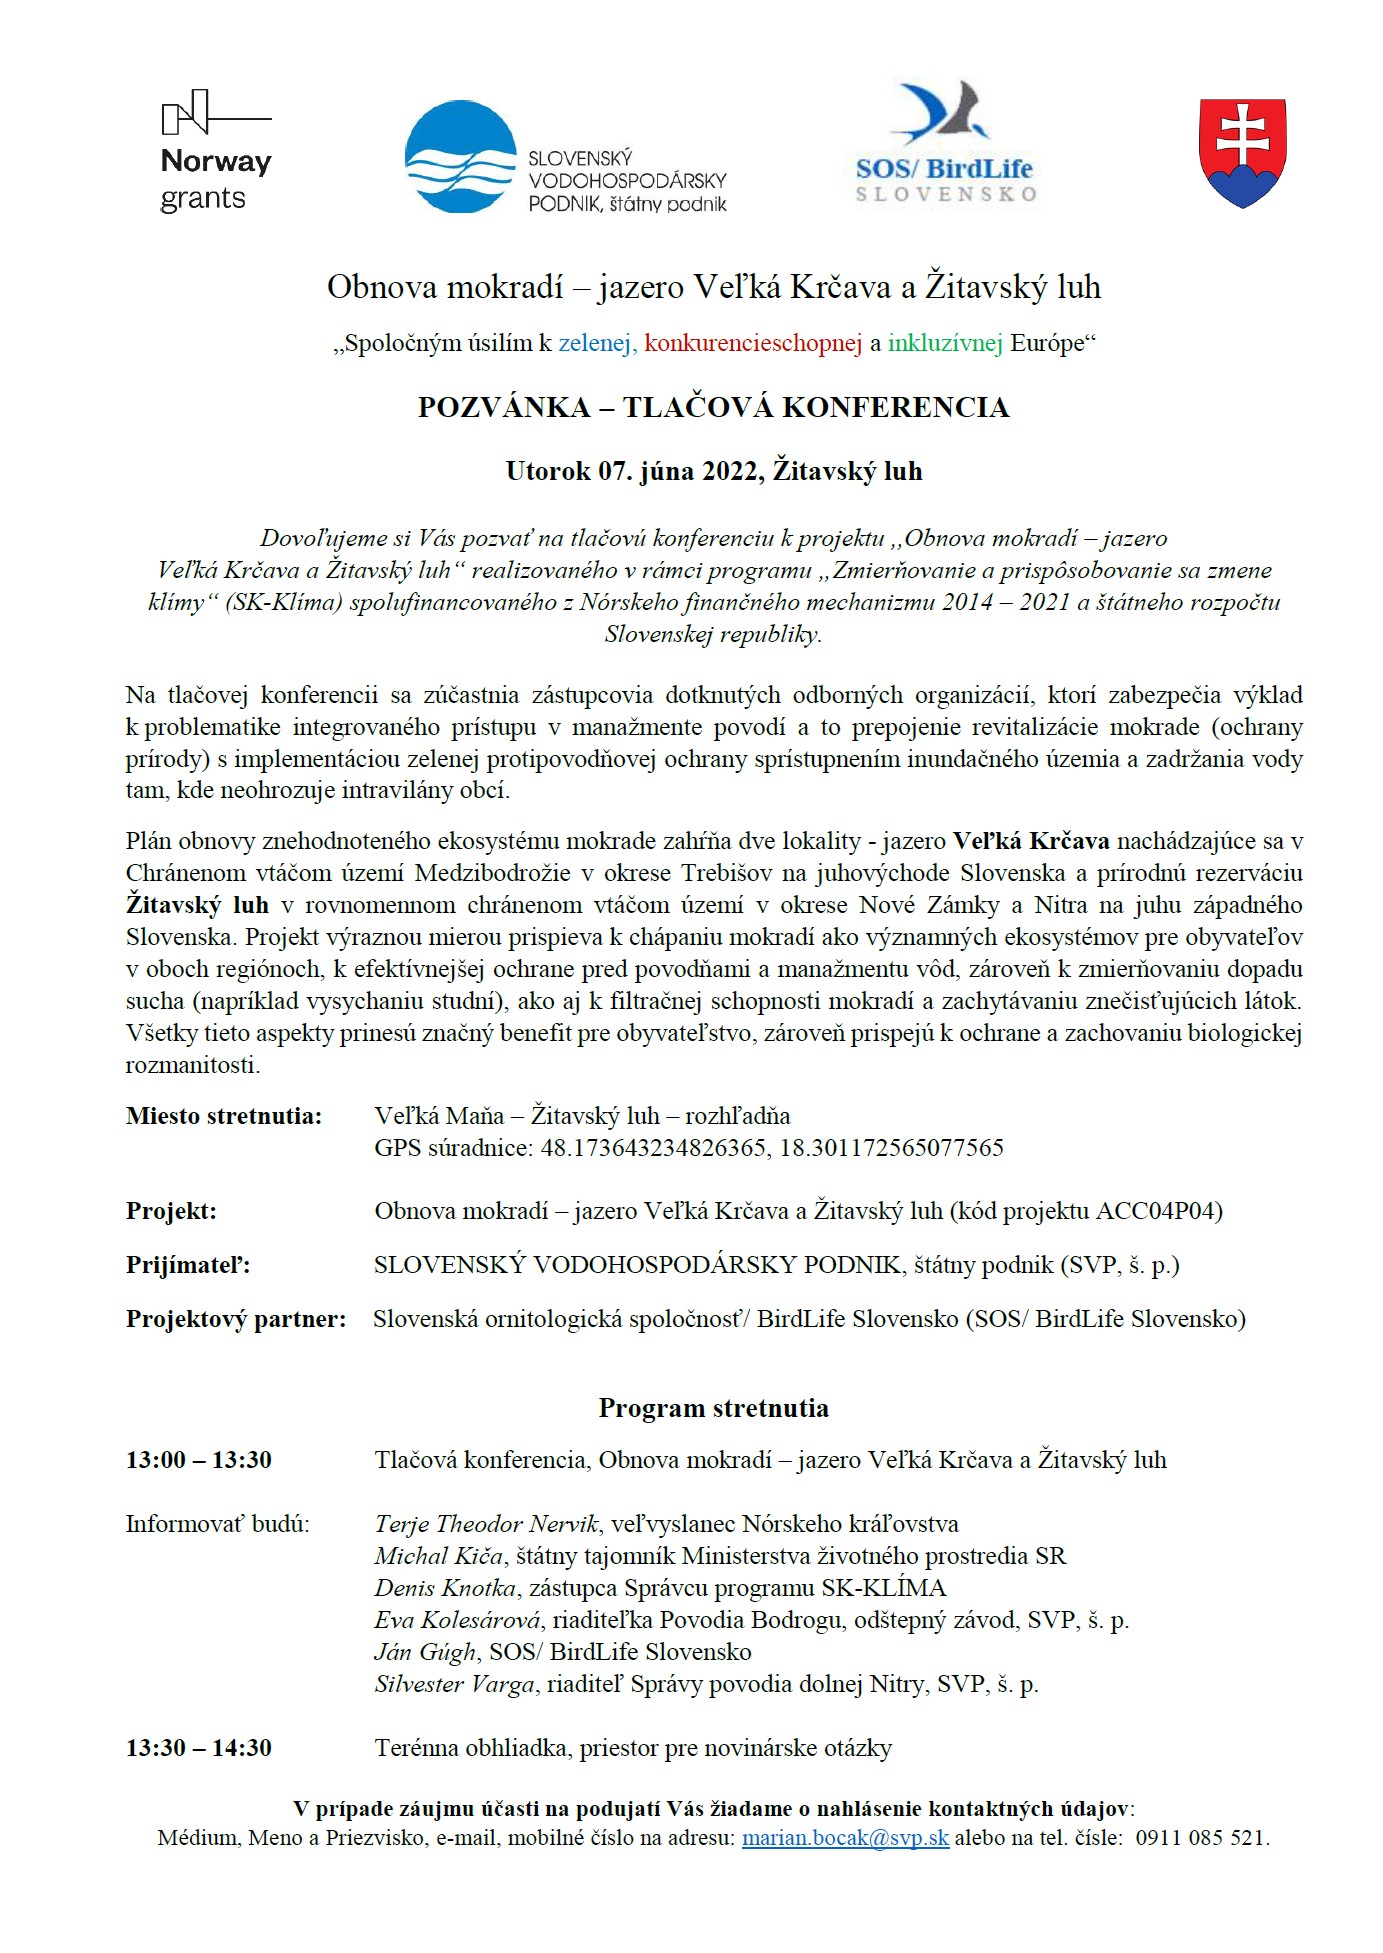 pozvanka_tlacova_konferencia